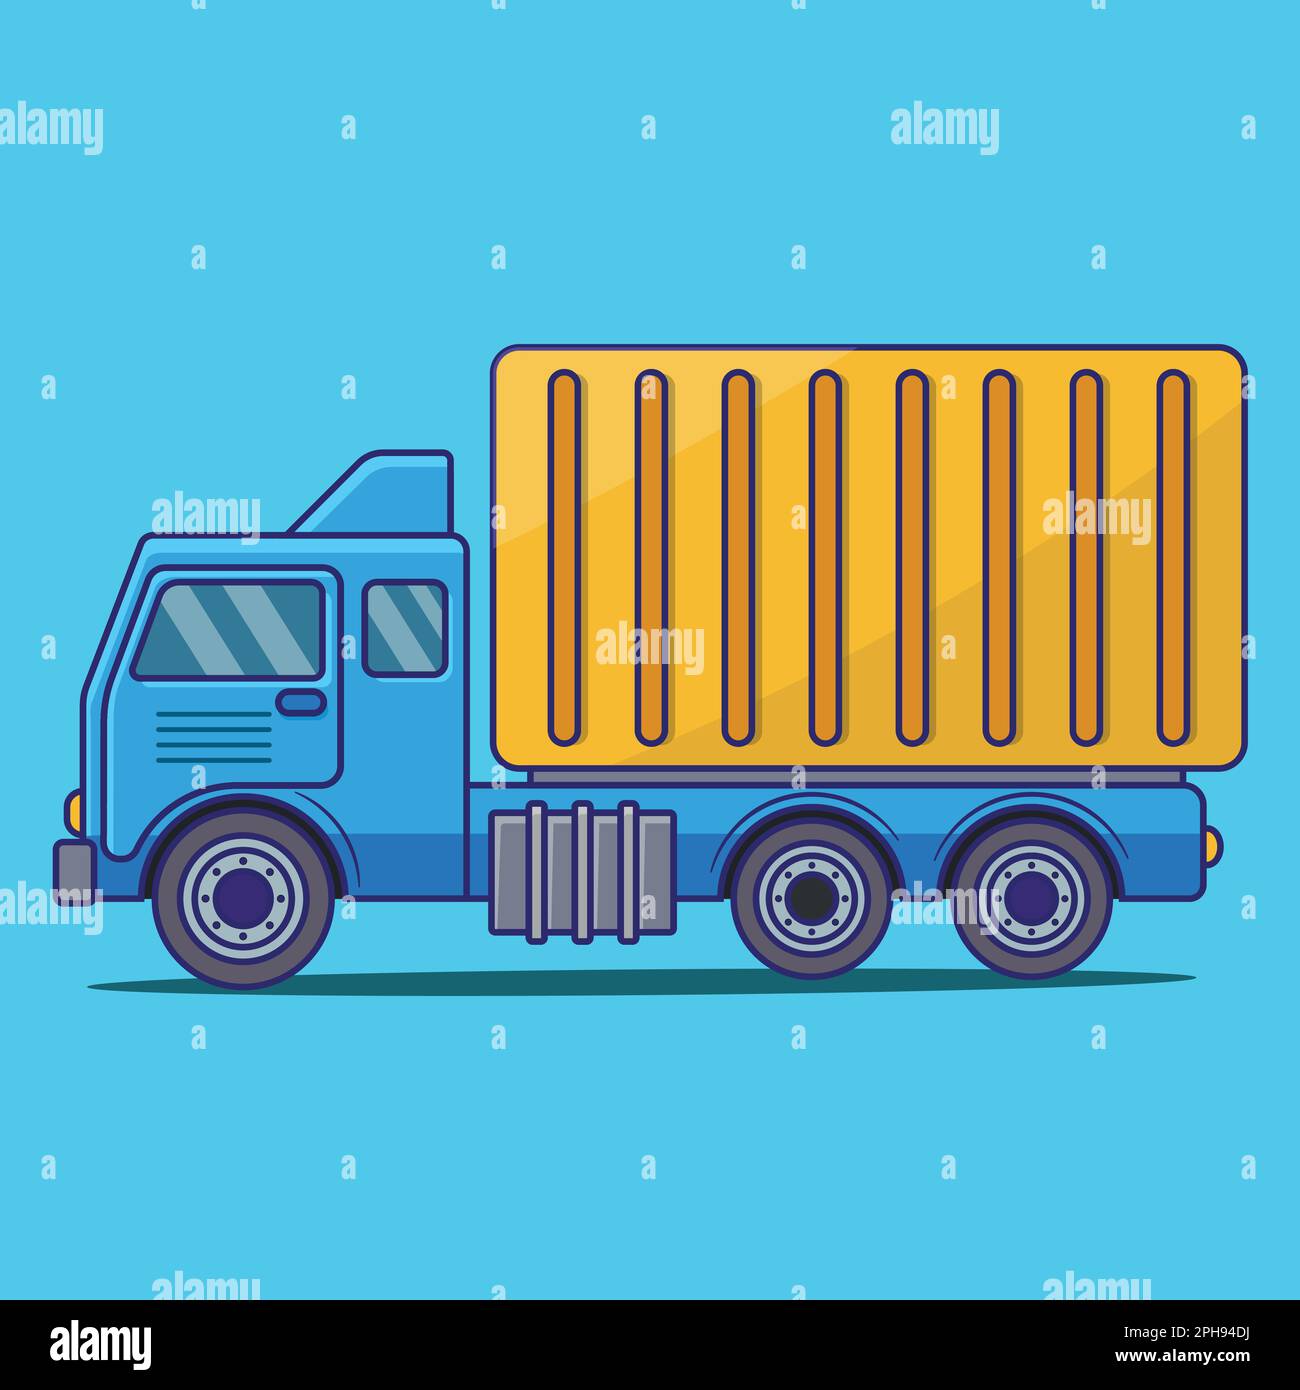 Truck Cartoon Icon Illustration, Truck Flat Vector Icon Illustration, Truck Cartoon Sticker, Bus Cartoon Vector Sticker, Transportation Icon Concept Stock Vector